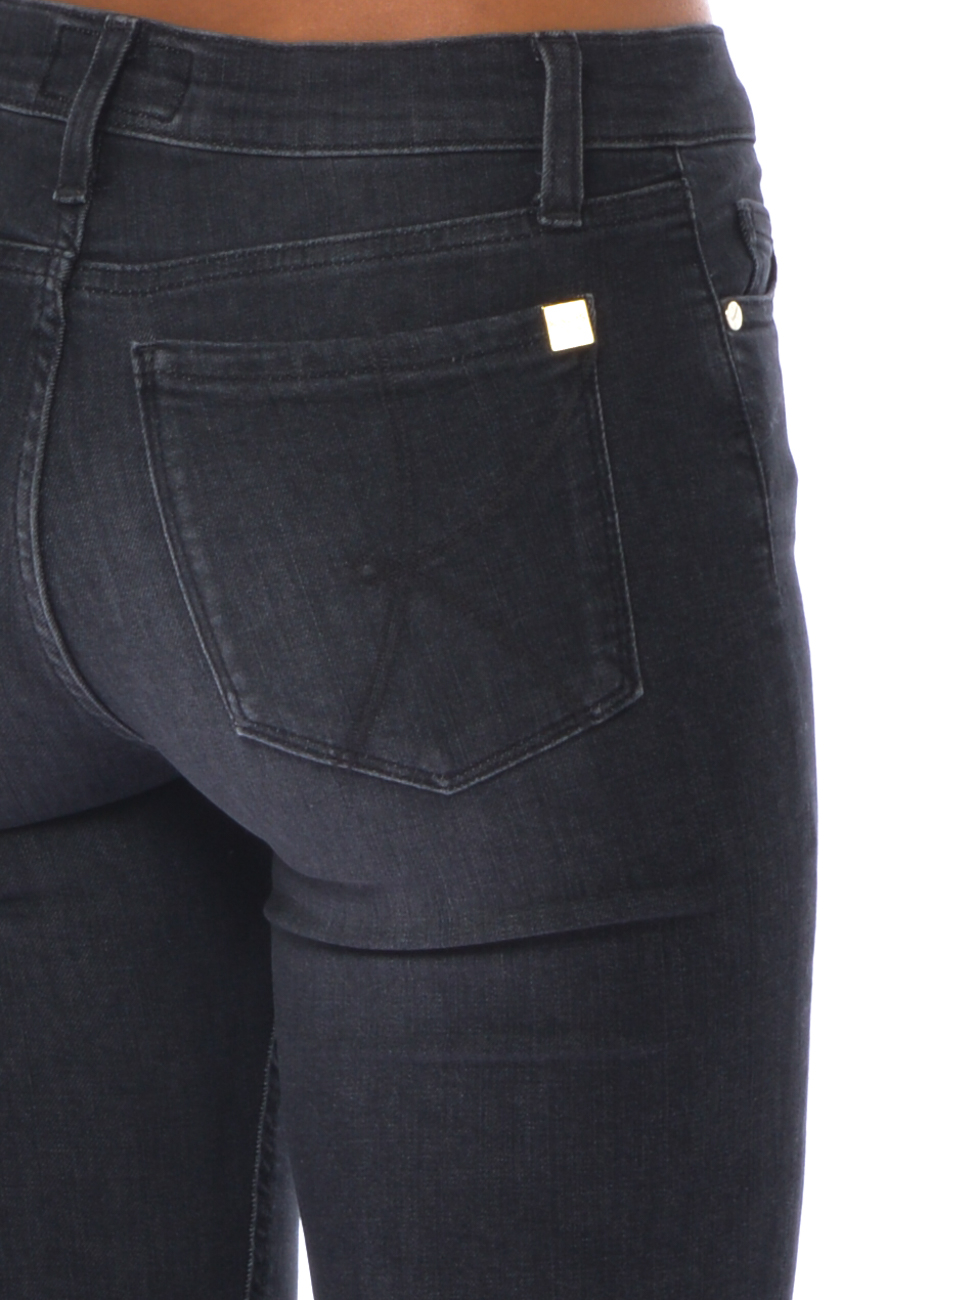 Jeans da donna Kaos cinque tasche stone washed - OI6BL002